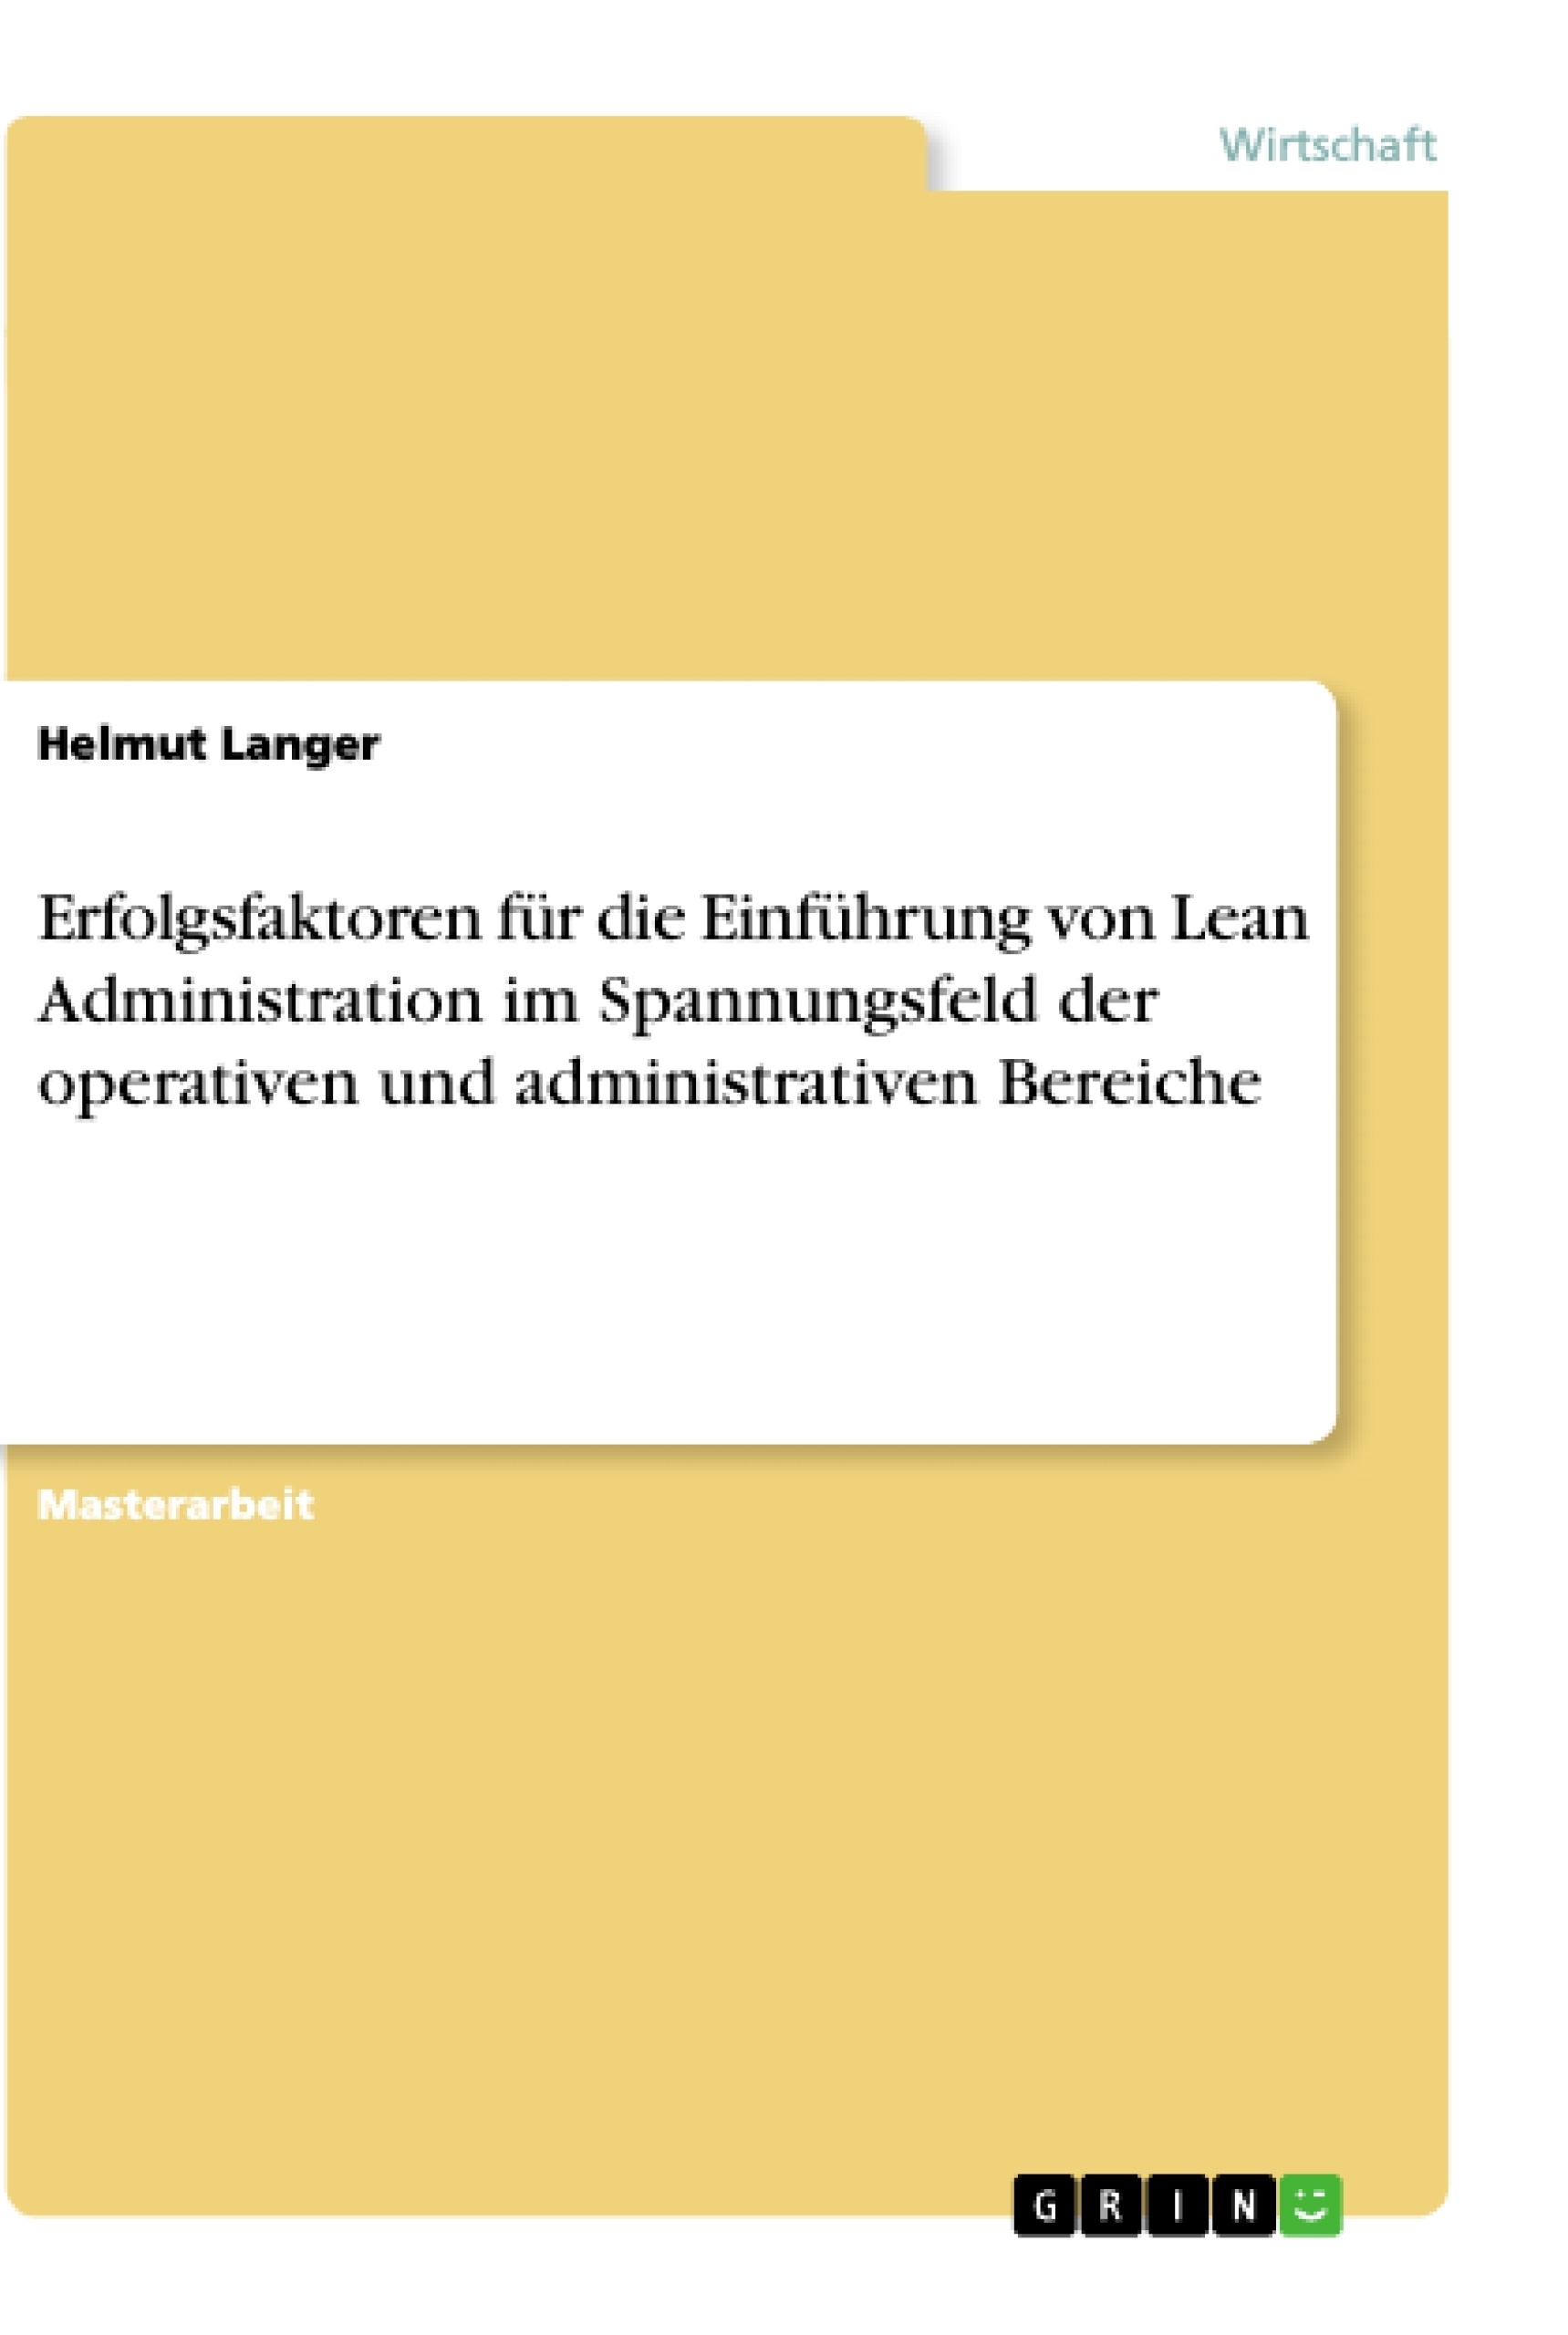 Title: Erfolgsfaktoren für die Einführung von Lean Administration im Spannungsfeld der operativen und administrativen Bereiche